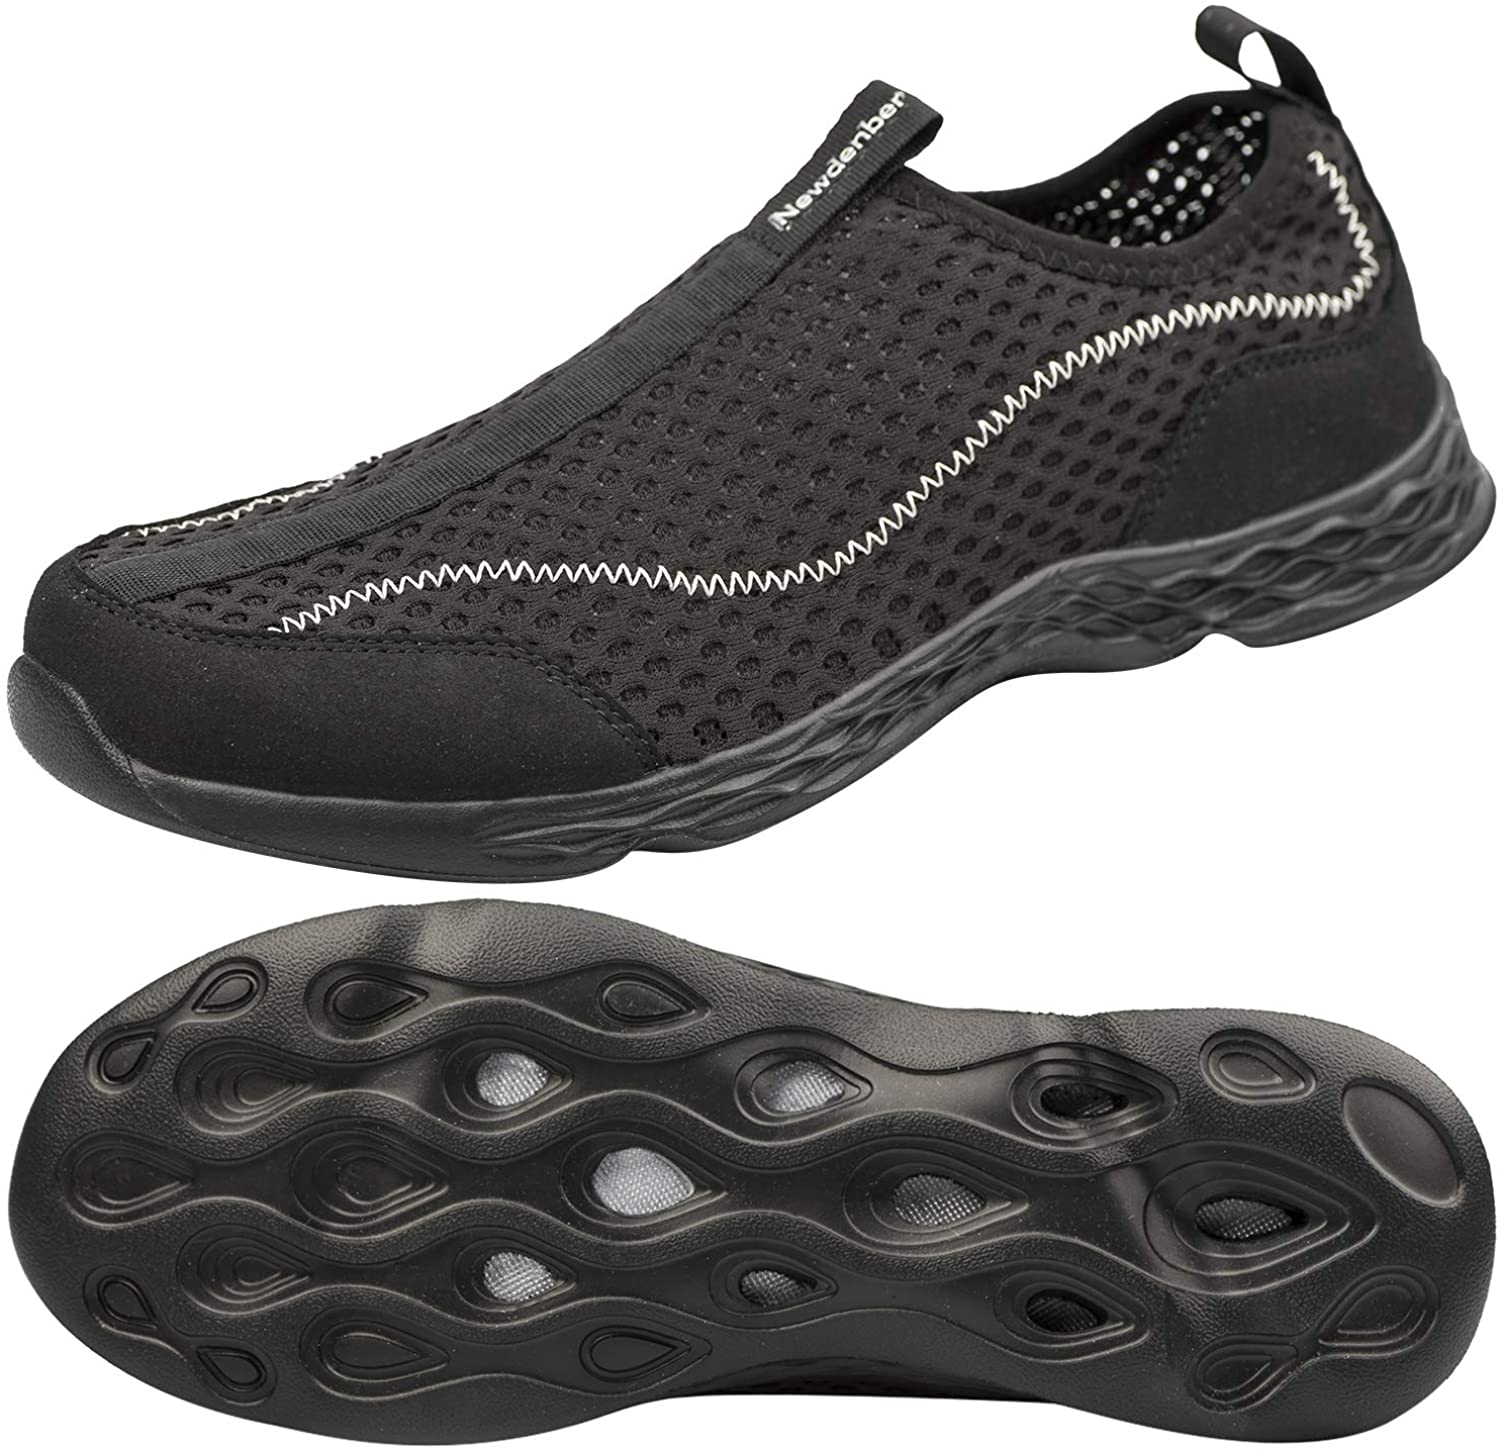 DOUSSPRT Men's Water Shoes Quick Drying Sports Aqua Shoes